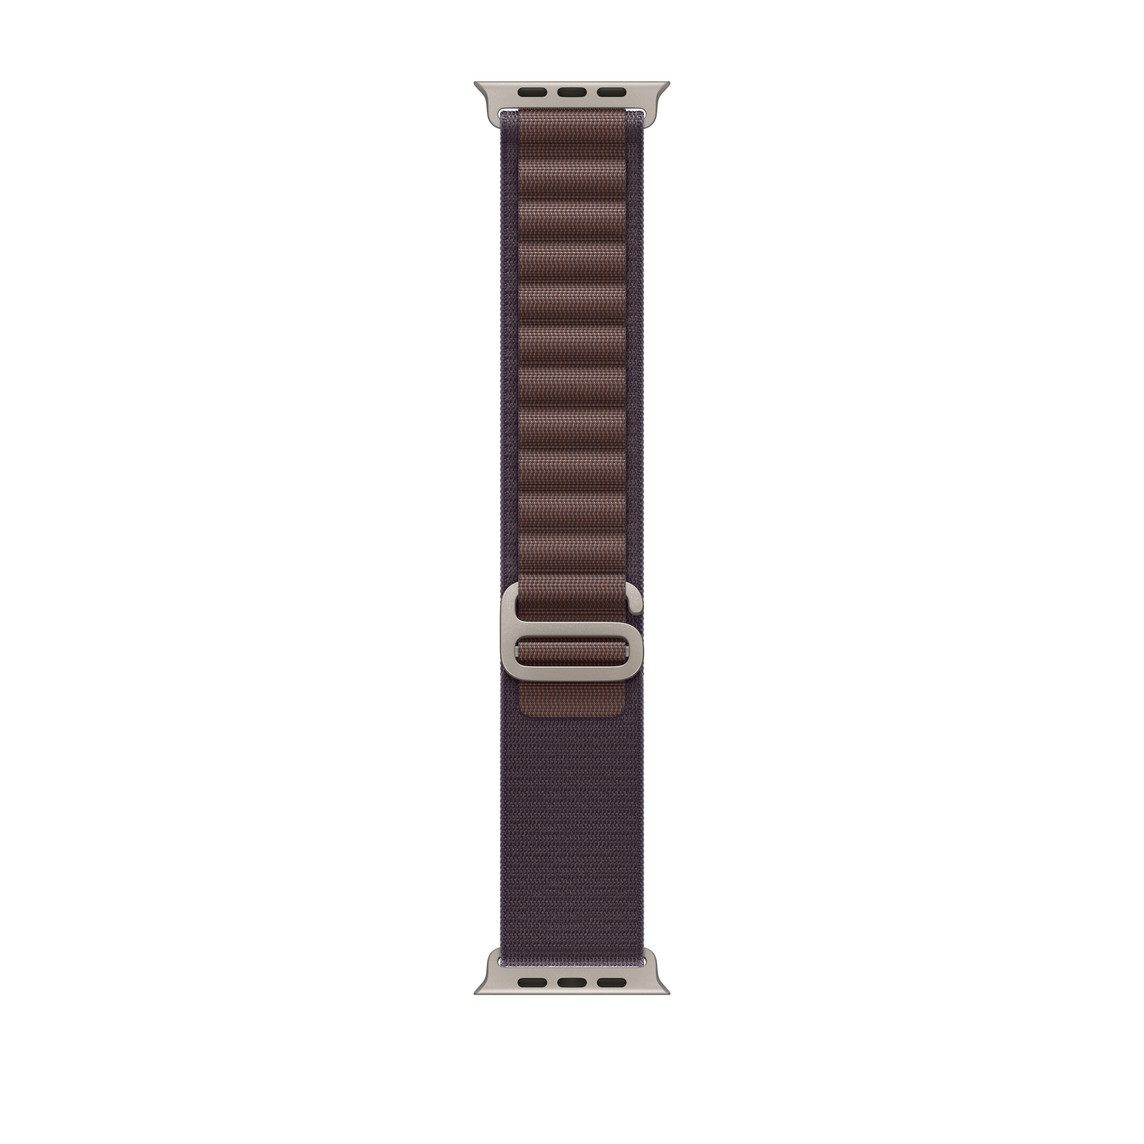 靛蓝色高山回环式表带，展示双层精编织物材质、环扣和钛金属 G 式表扣。